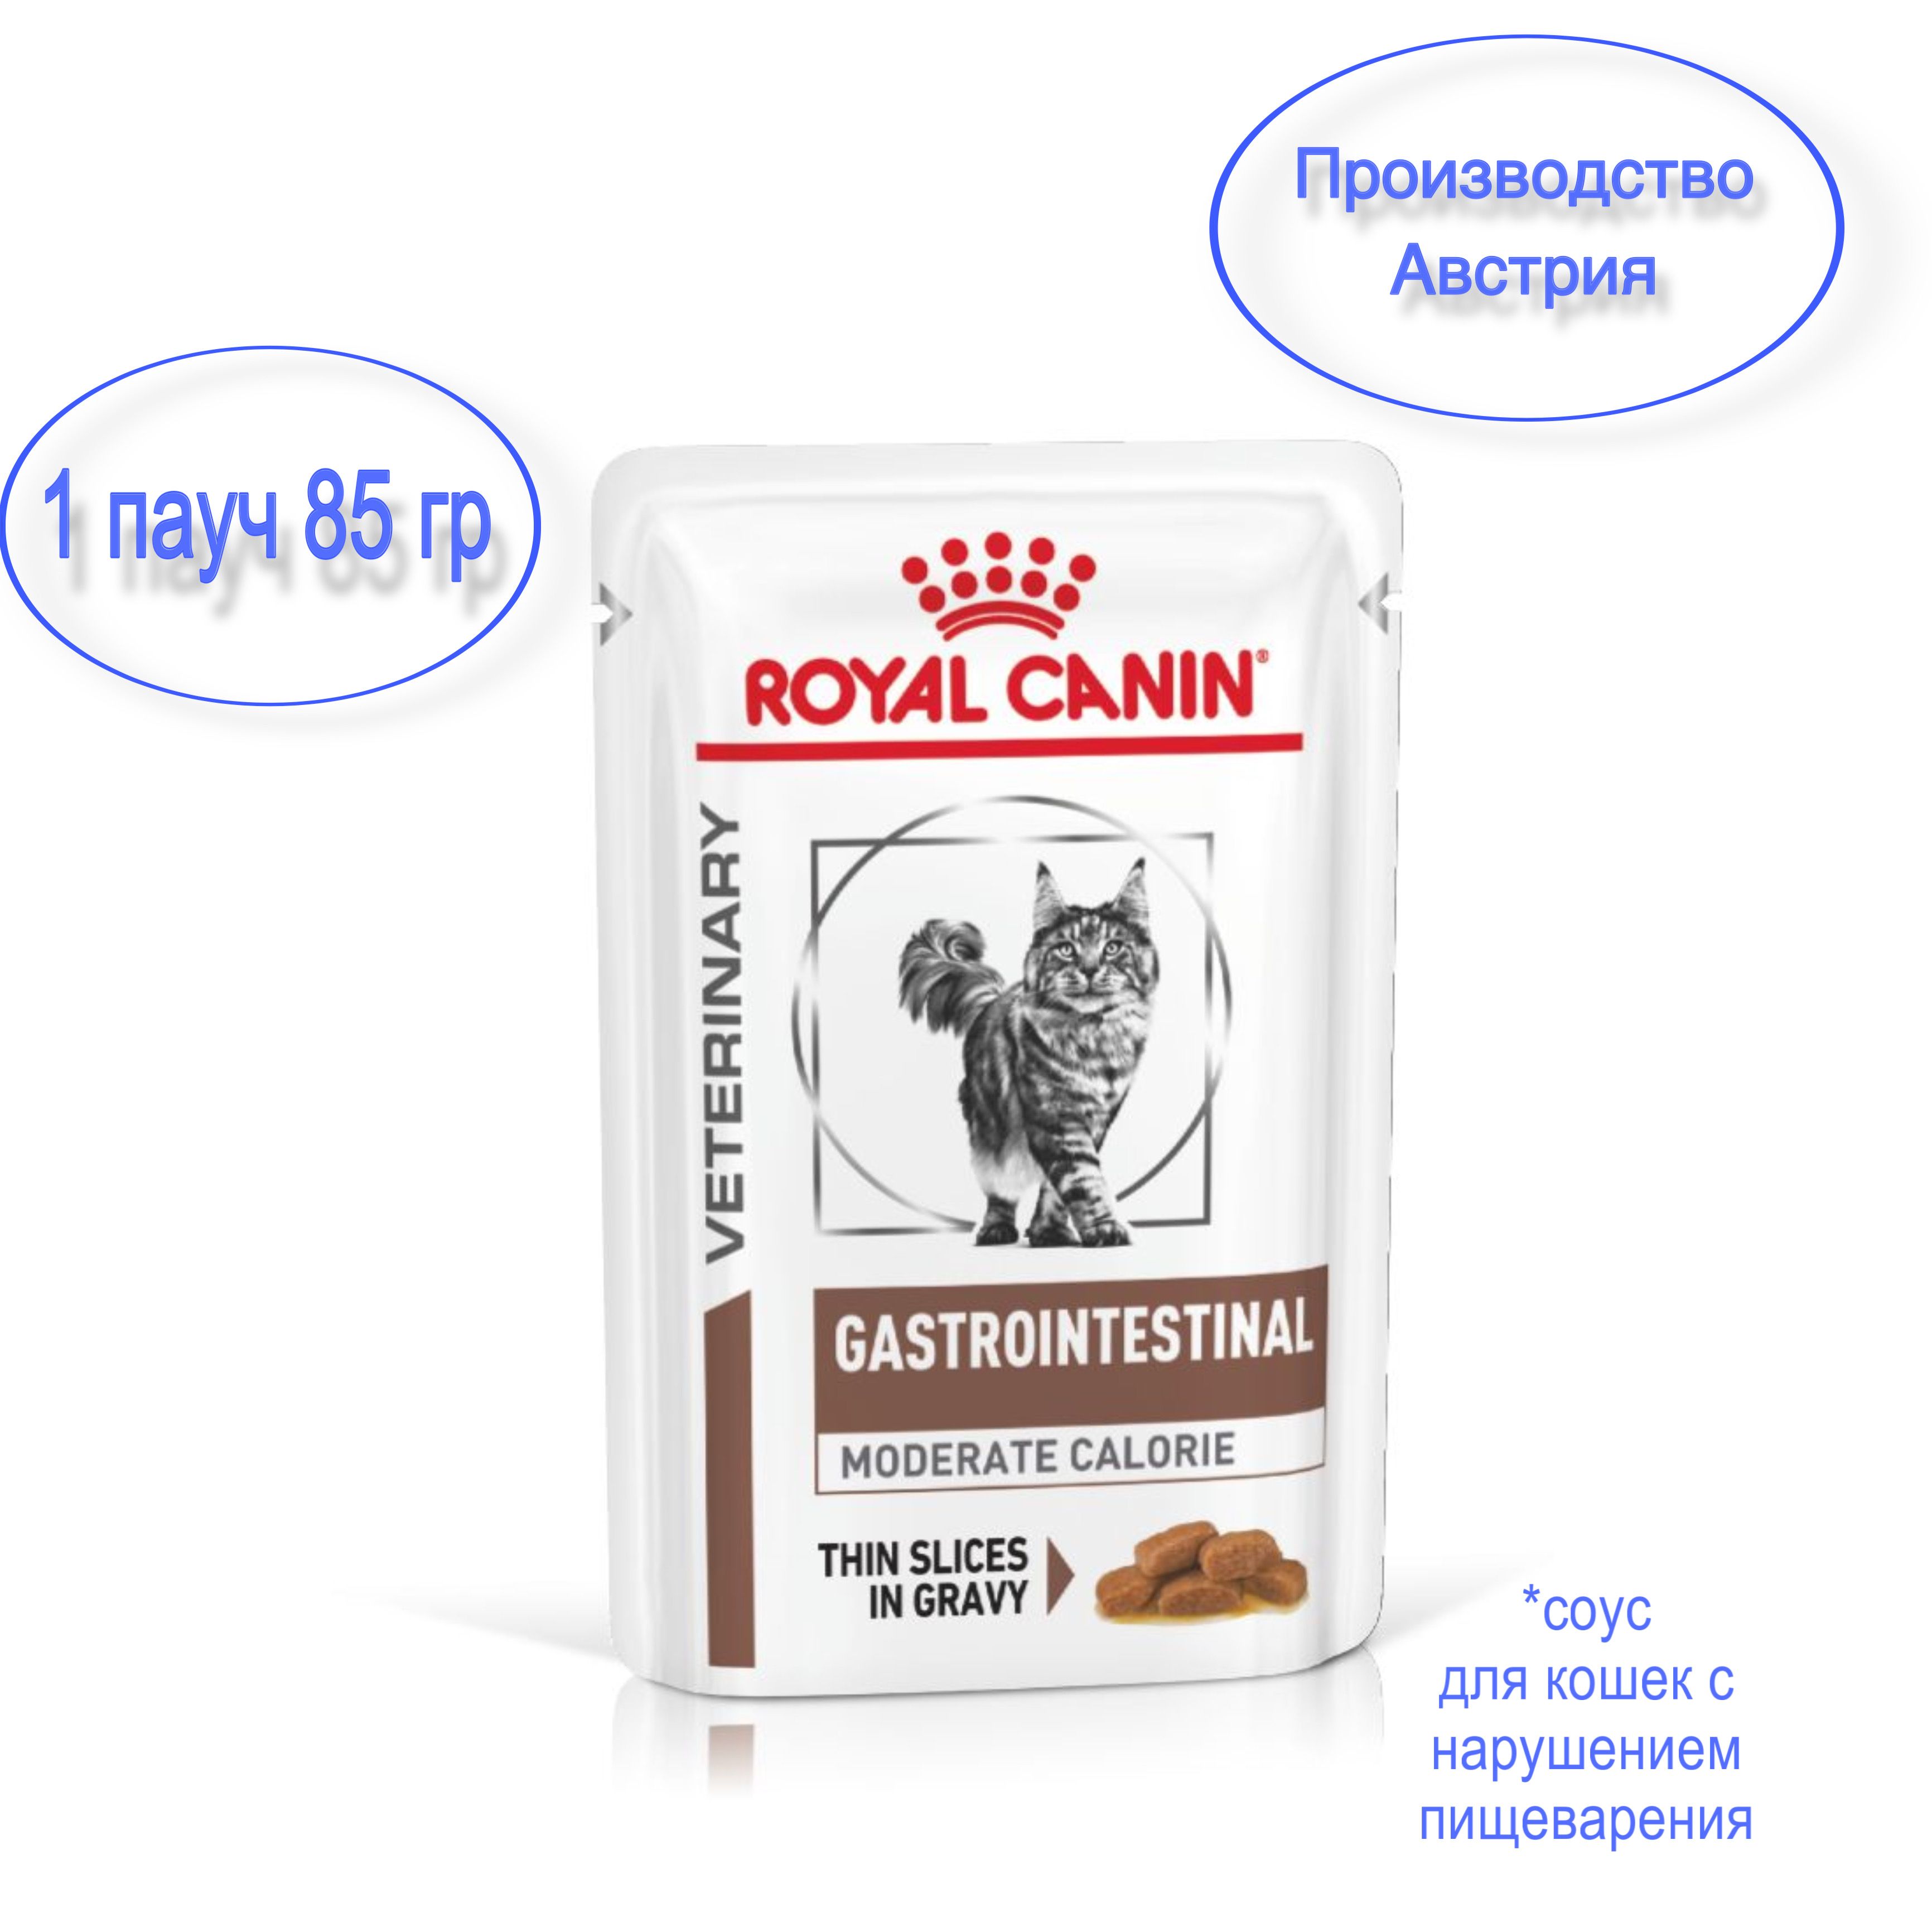 Royal canin moderate calorie для кошек. Royal Canin Gastrointestinal moderate Calorie для кошек.